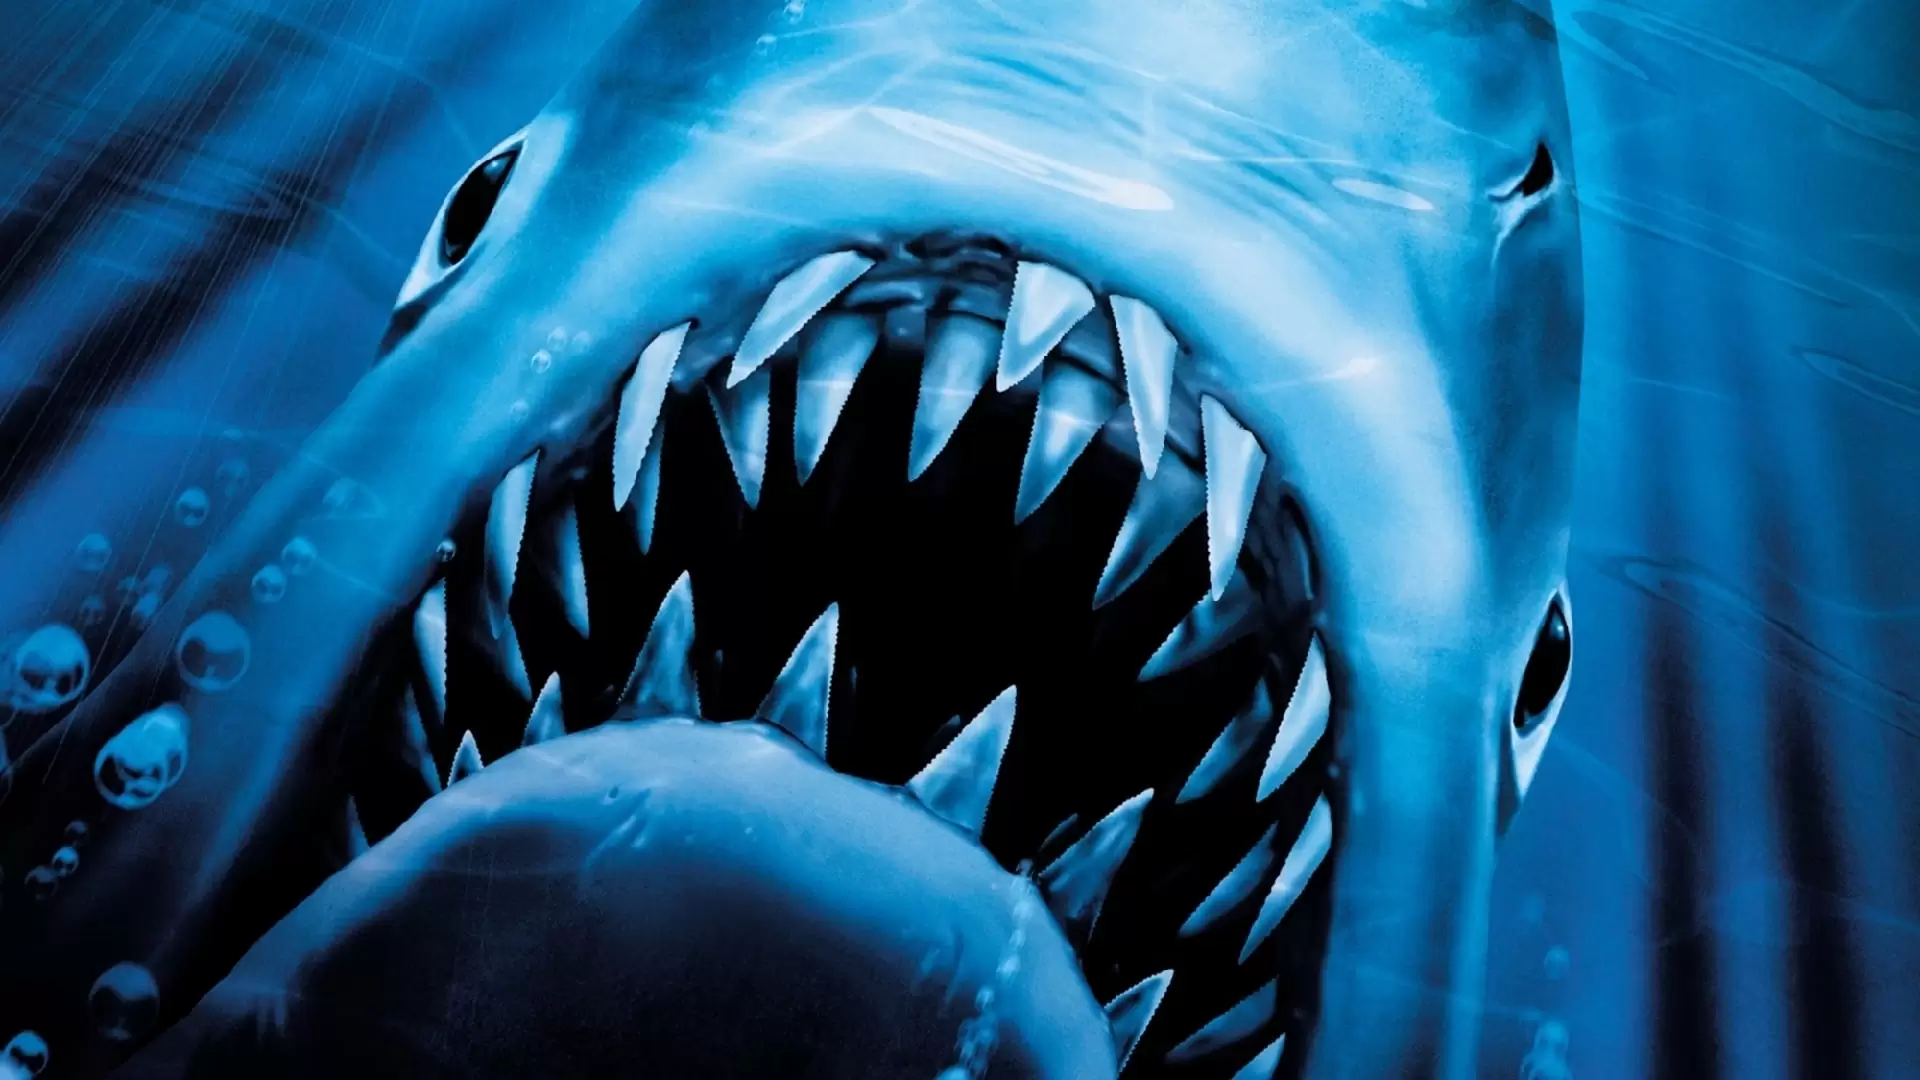 دانلود فیلم Jaws 2 1978 (آرواره ها ۲)